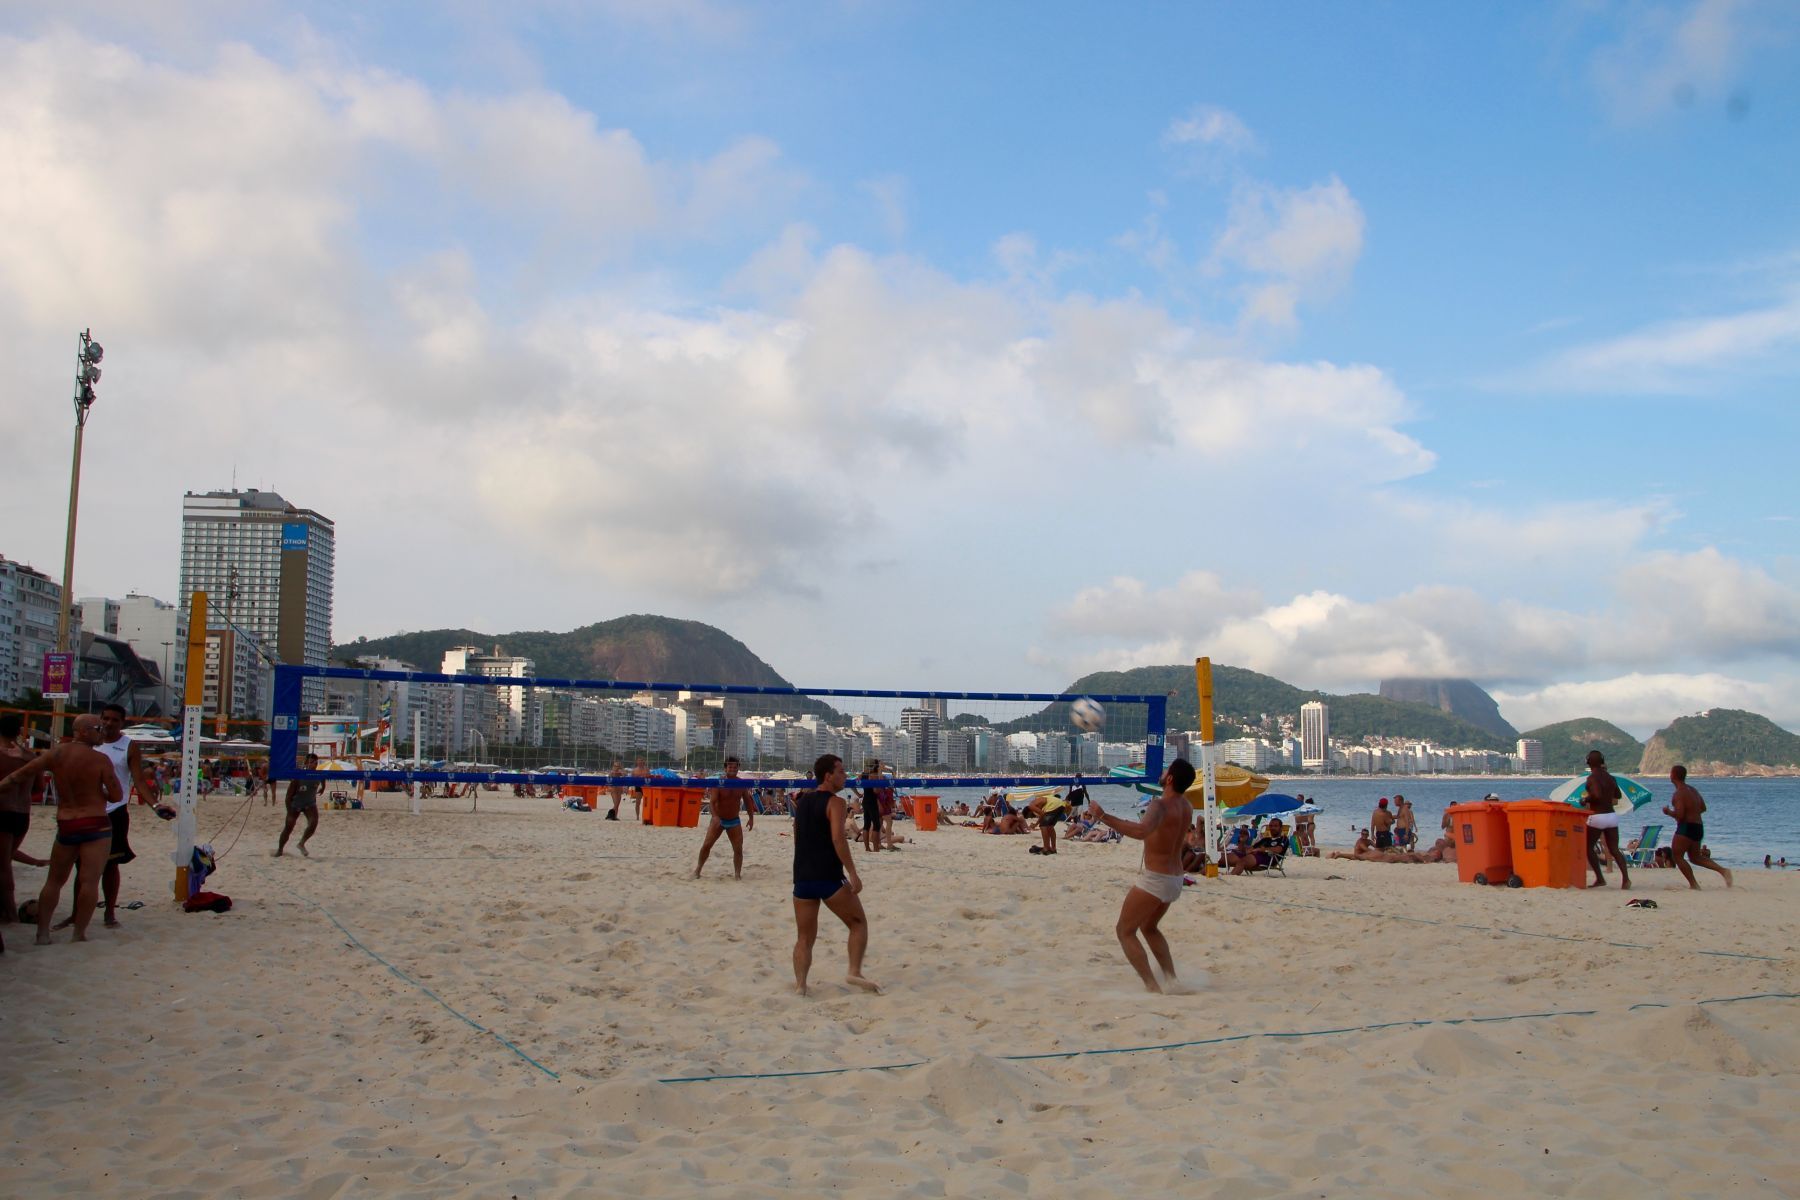 Cariocas (Rio de Janeiro natives) play footvolley in Copacabana.